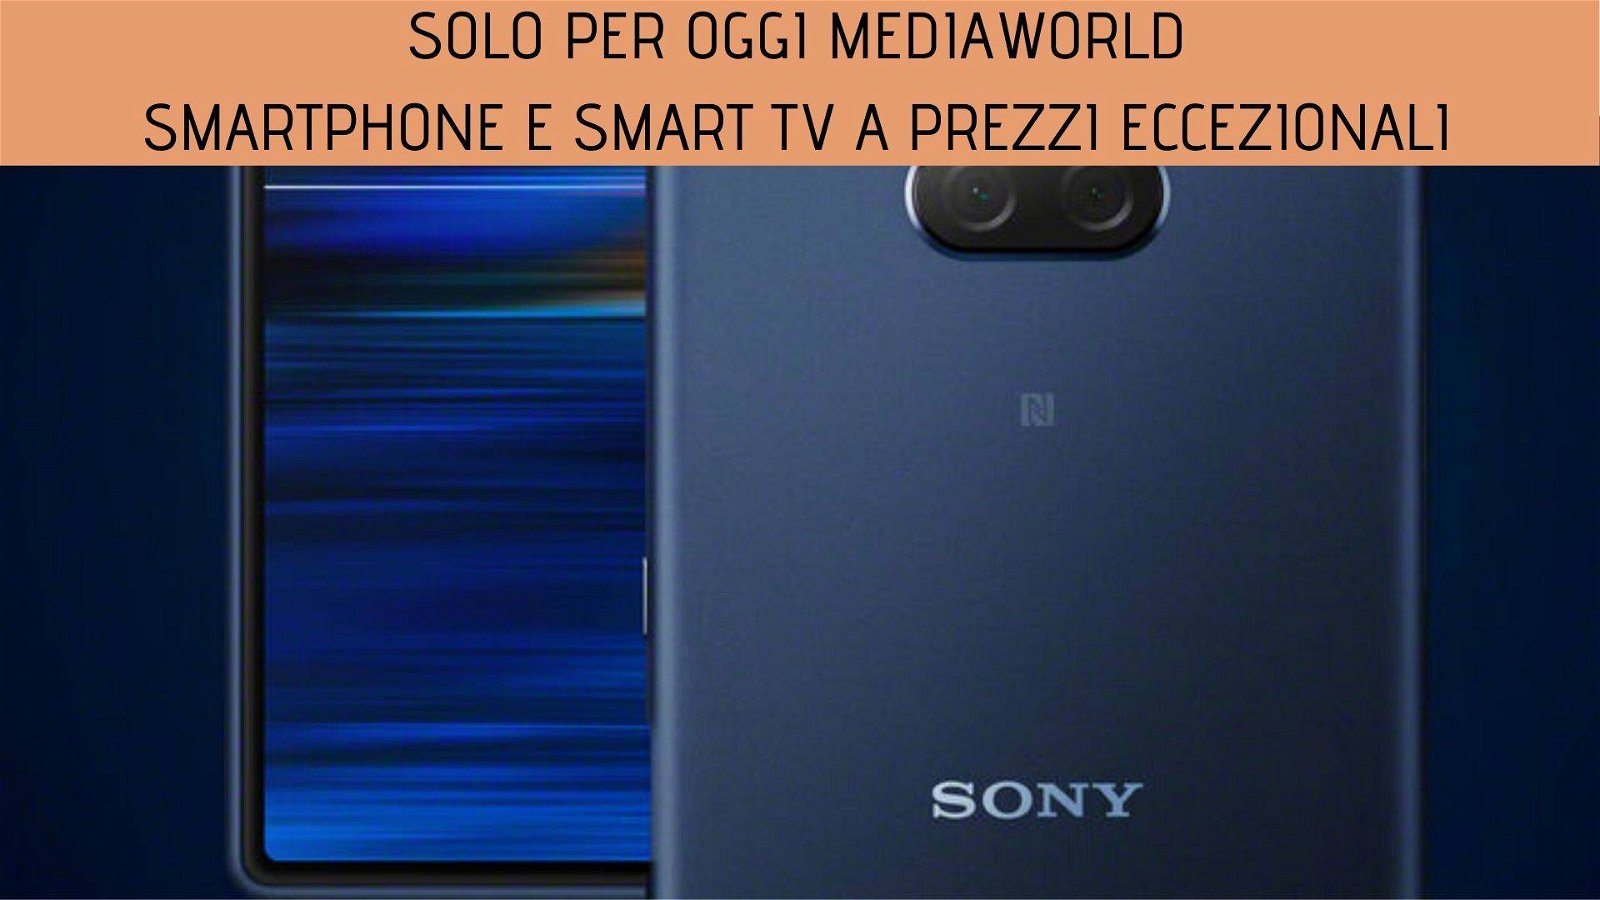 Immagine di Smartphone e smart TV a prezzi eccezionali nei Solo per oggi Mediaworld